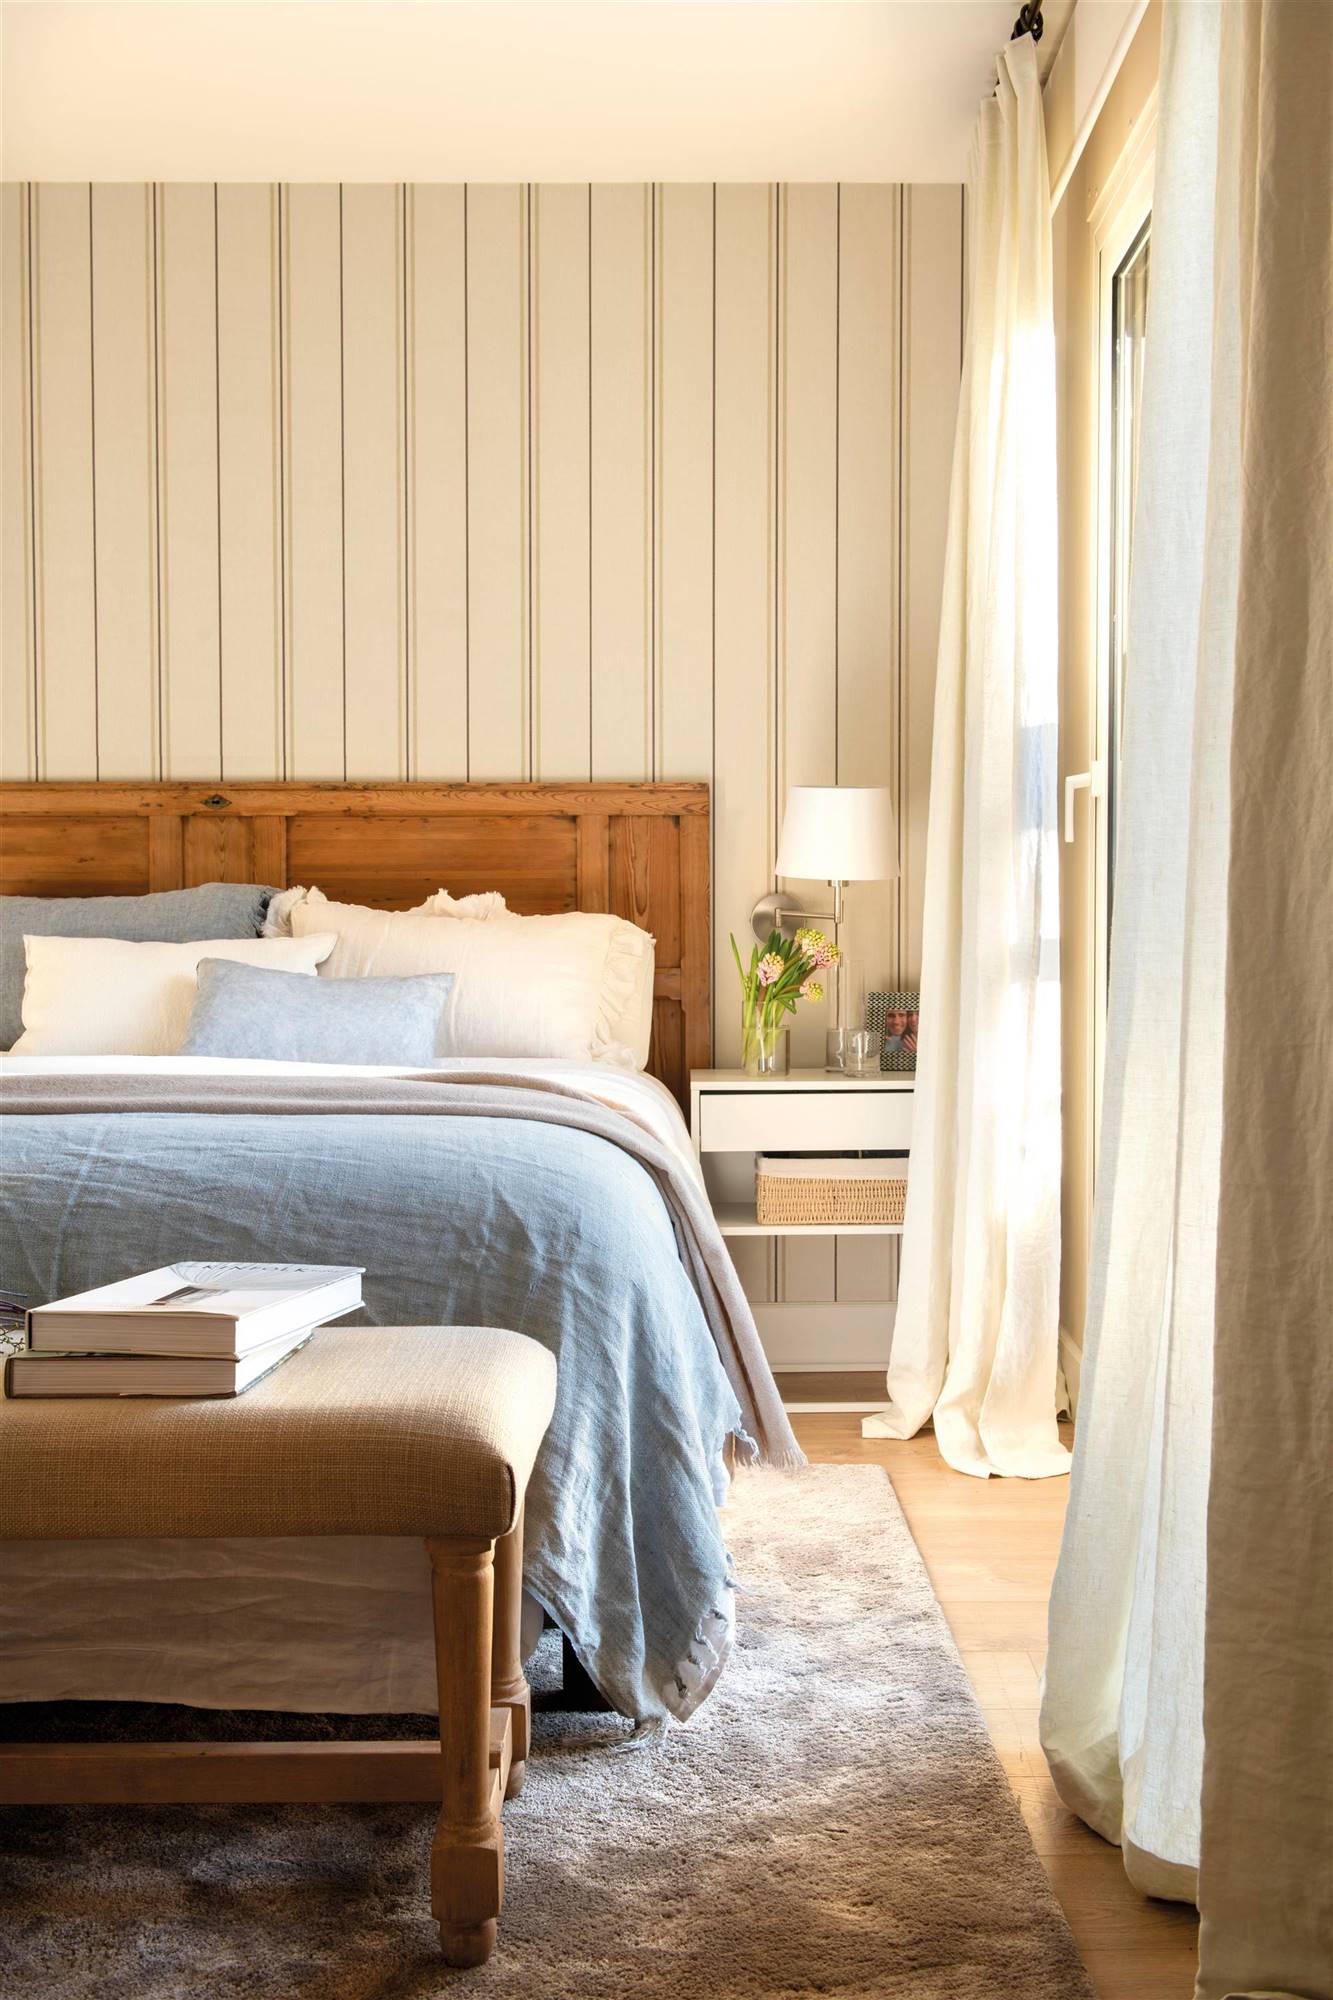 Dormitorio con puerta de madera recuperada como cabecero y papel pintado a rayas.